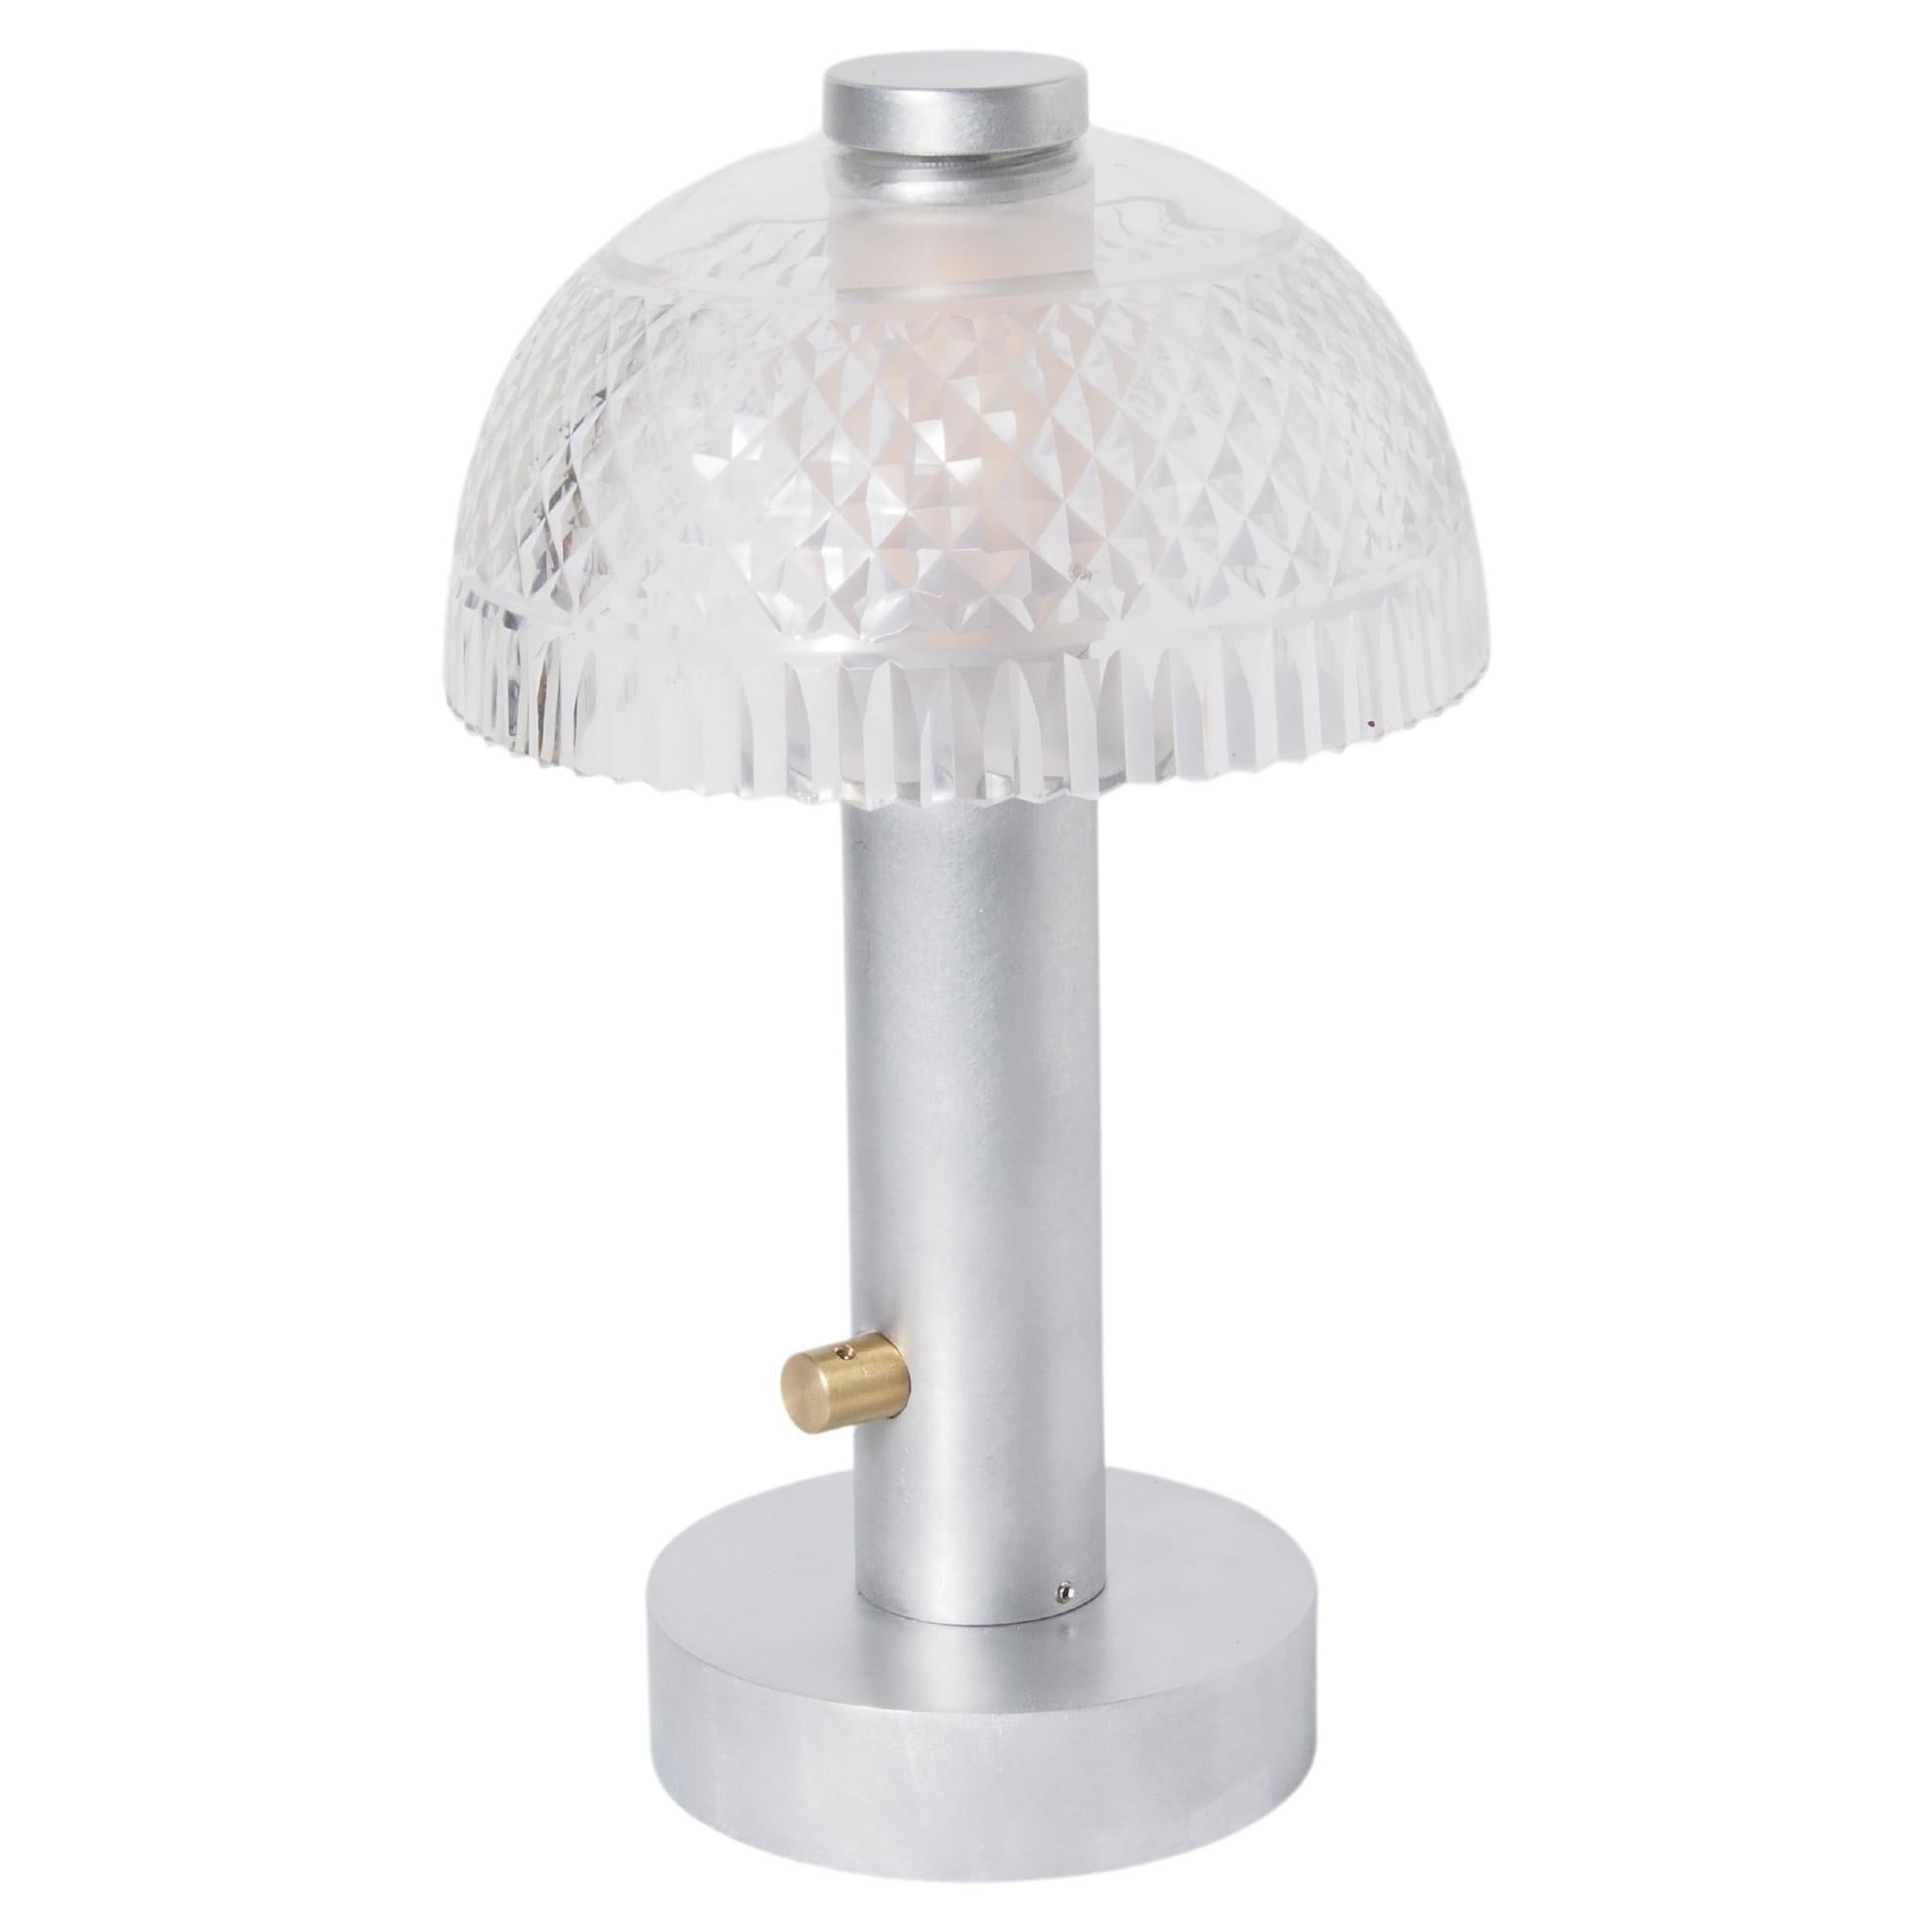 Porzellan-Tischlampe mit Vintage-Schirm - 02